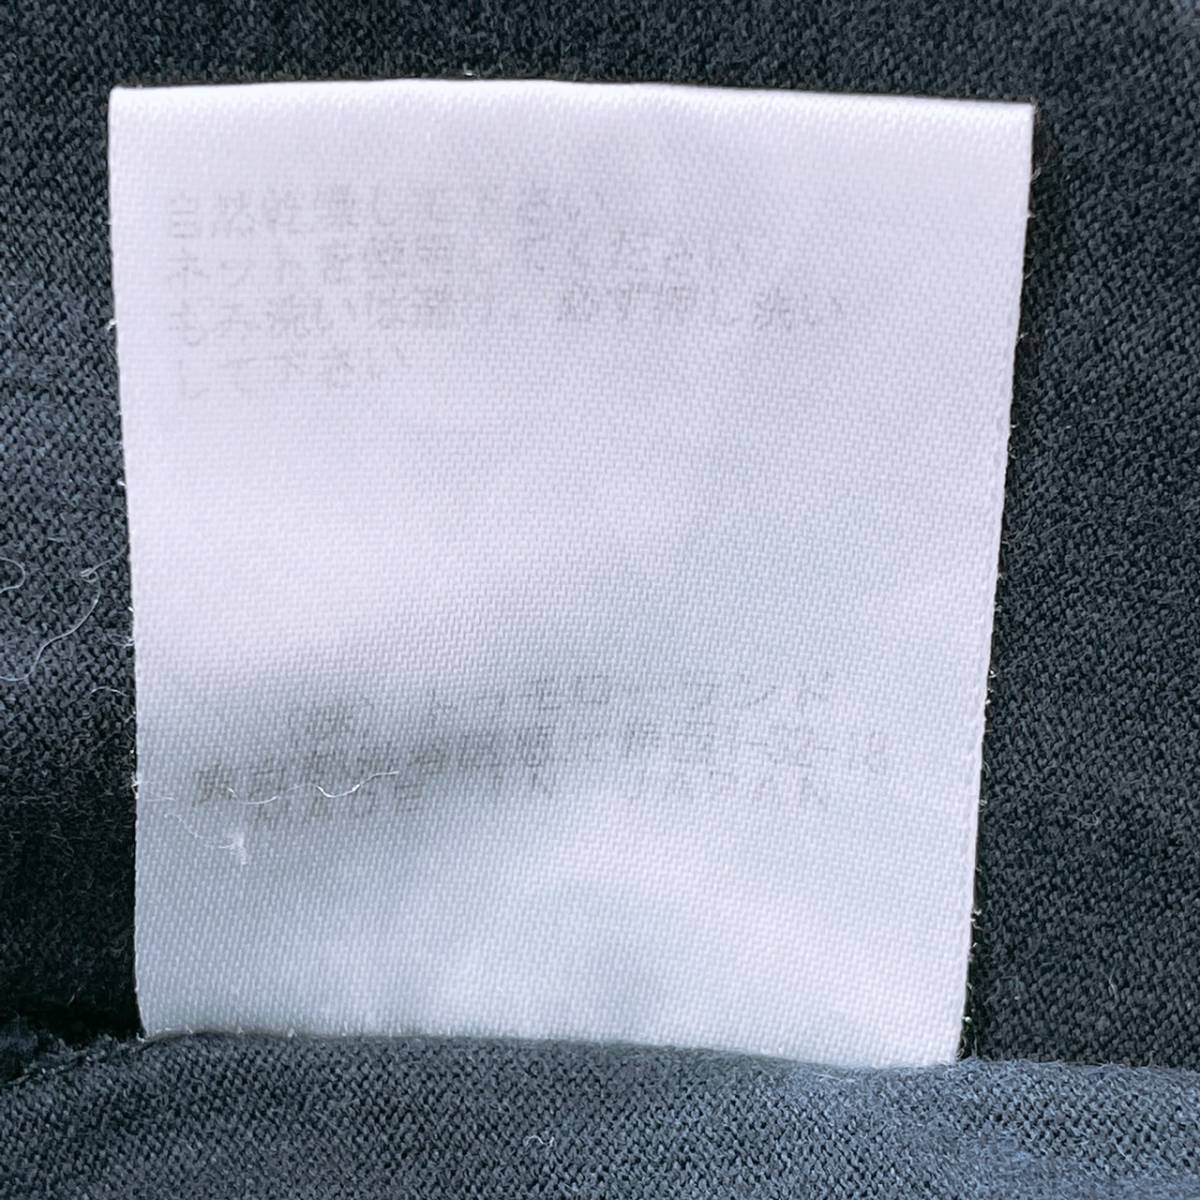 レディースM-L 1 GALERIE VIE トップス シャツ Tシャツ 半袖シャツ インナー ブラック 黒 丸ネック 日本製 ギャルリー・ヴィー 【22783】